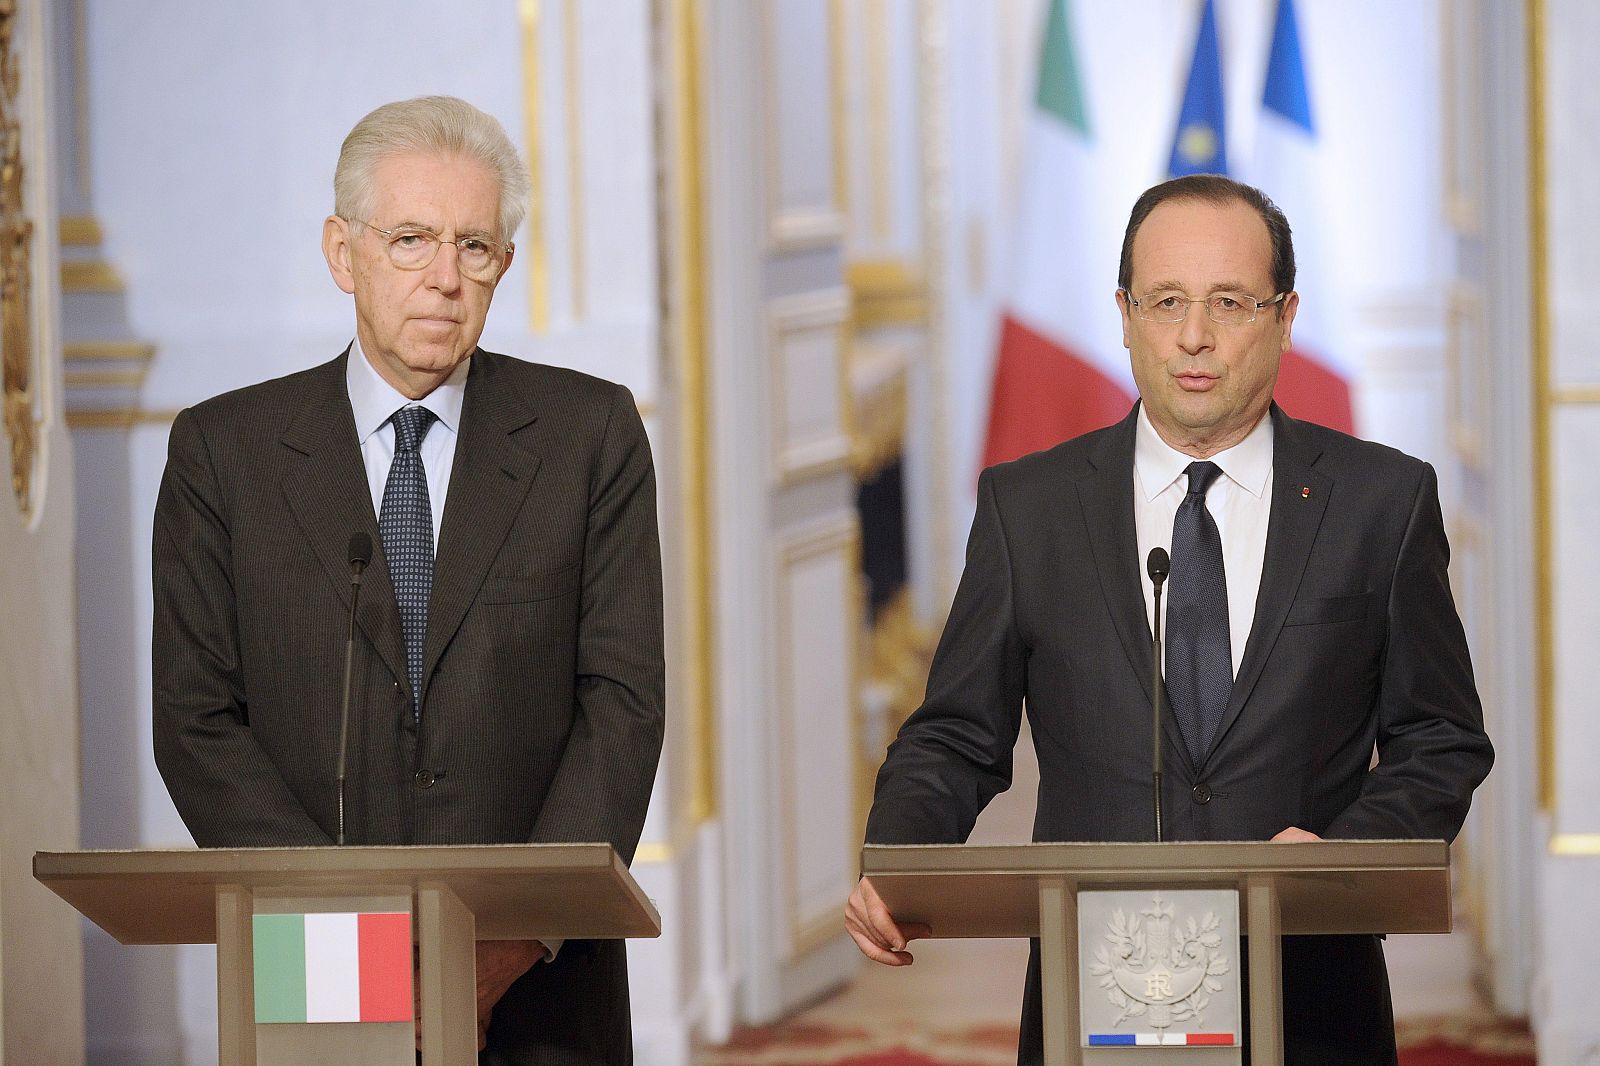 Francois Hollande meets Mario Monti